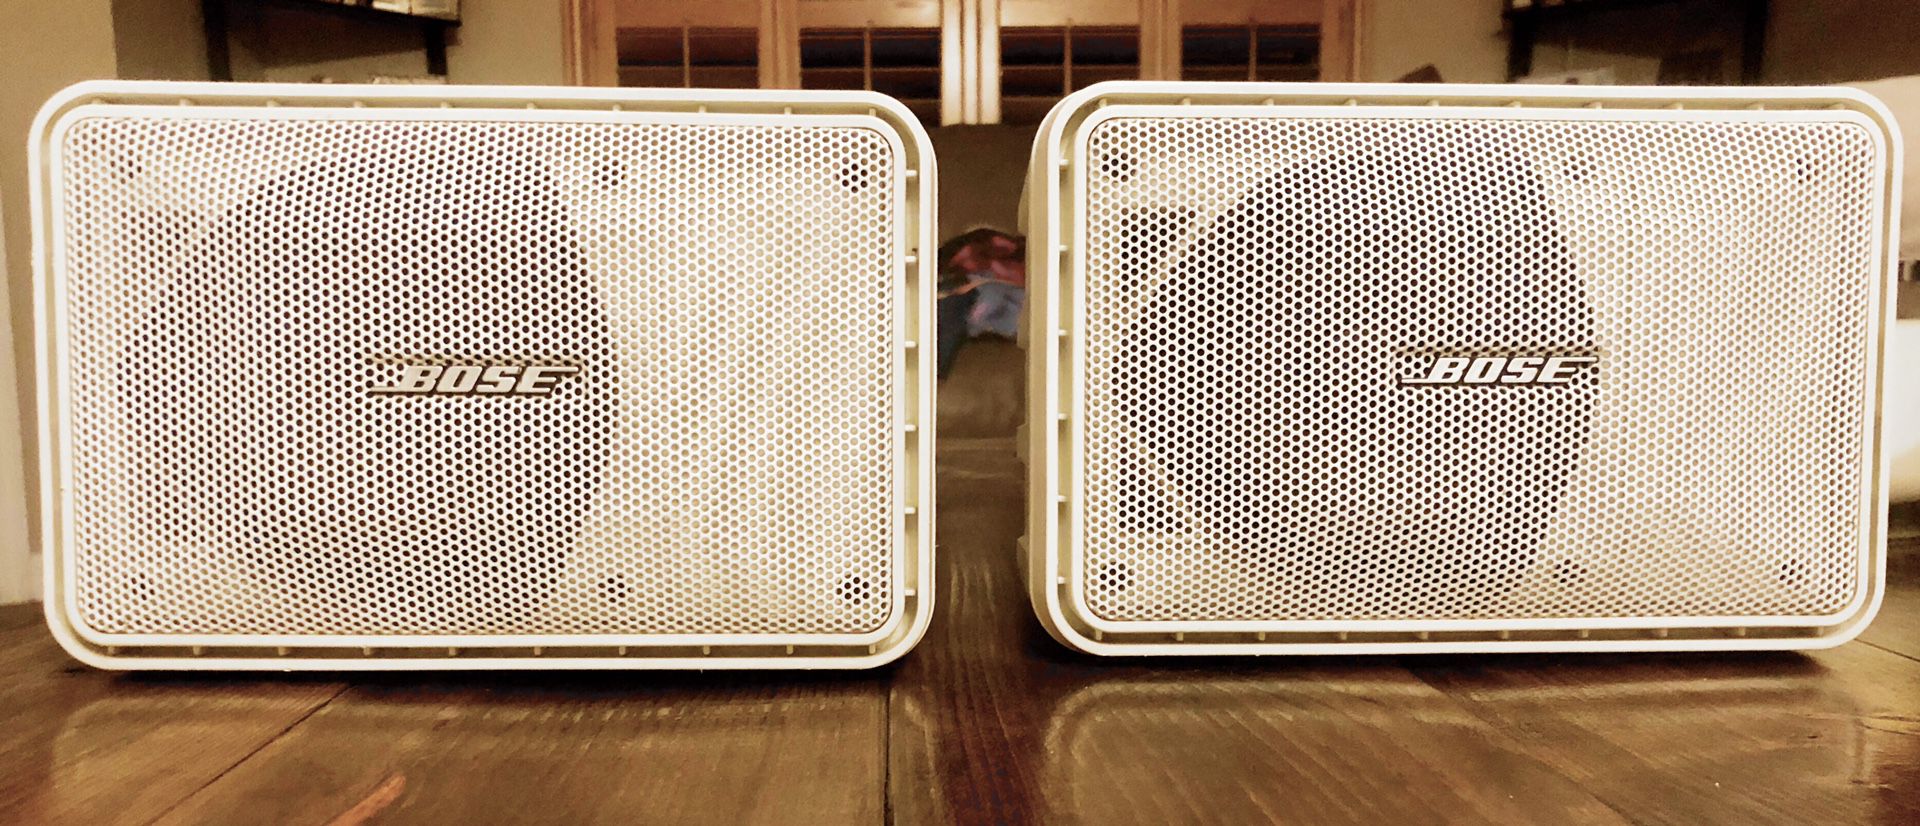 Bose 101 speakers